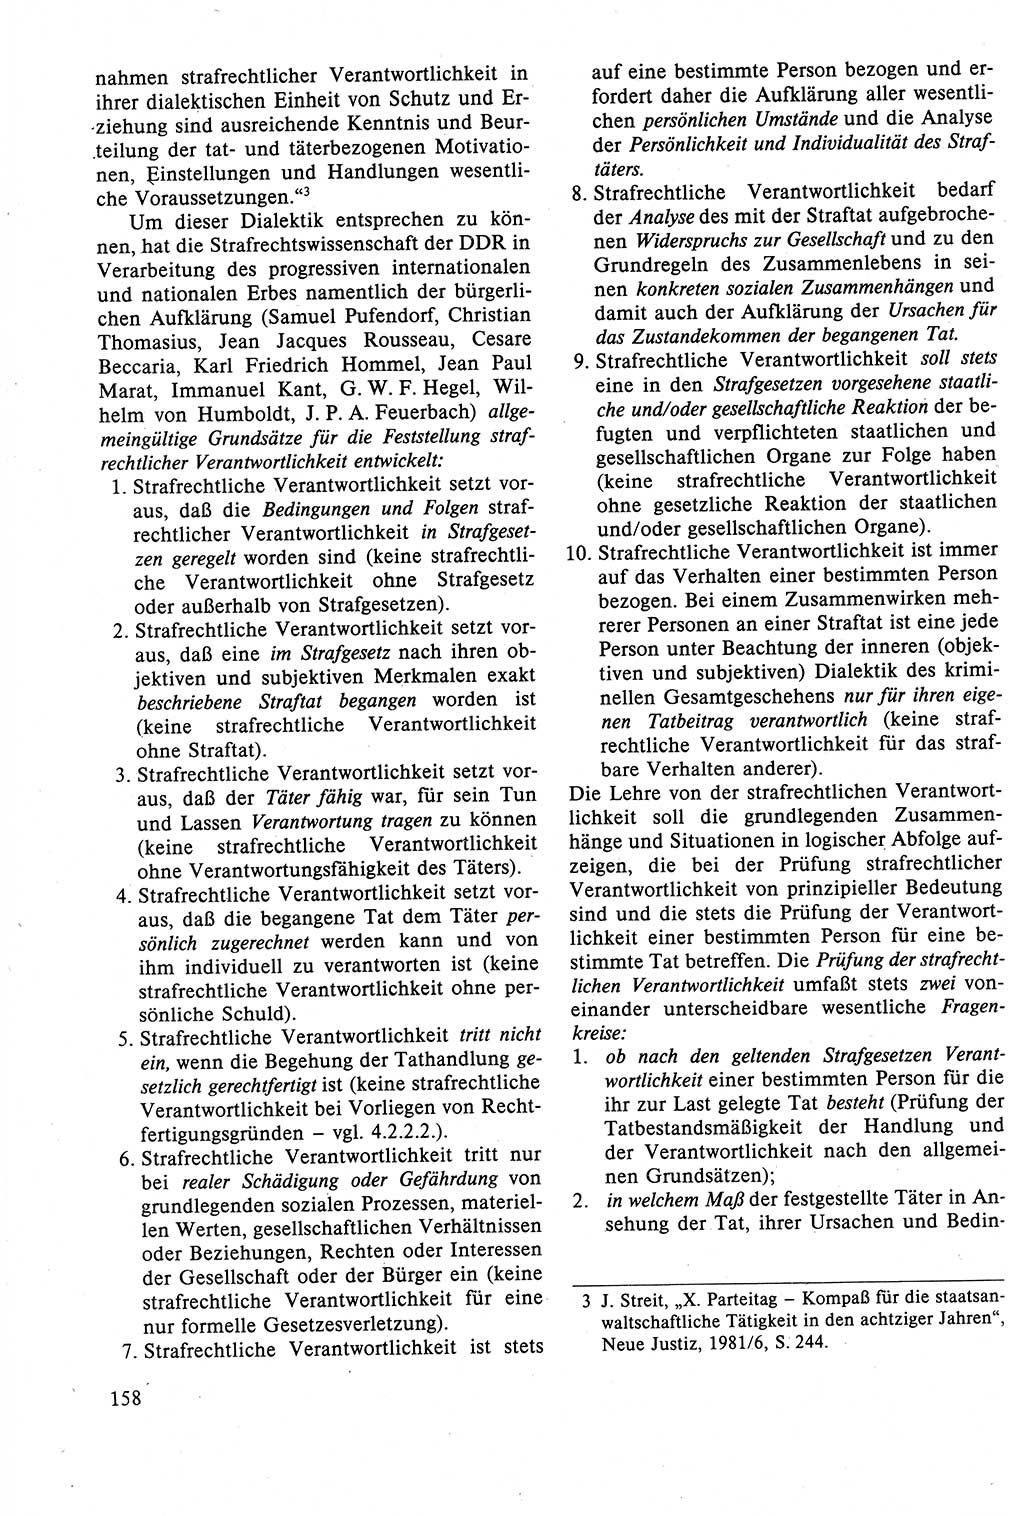 Strafrecht der DDR (Deutsche Demokratische Republik), Lehrbuch 1988, Seite 158 (Strafr. DDR Lb. 1988, S. 158)